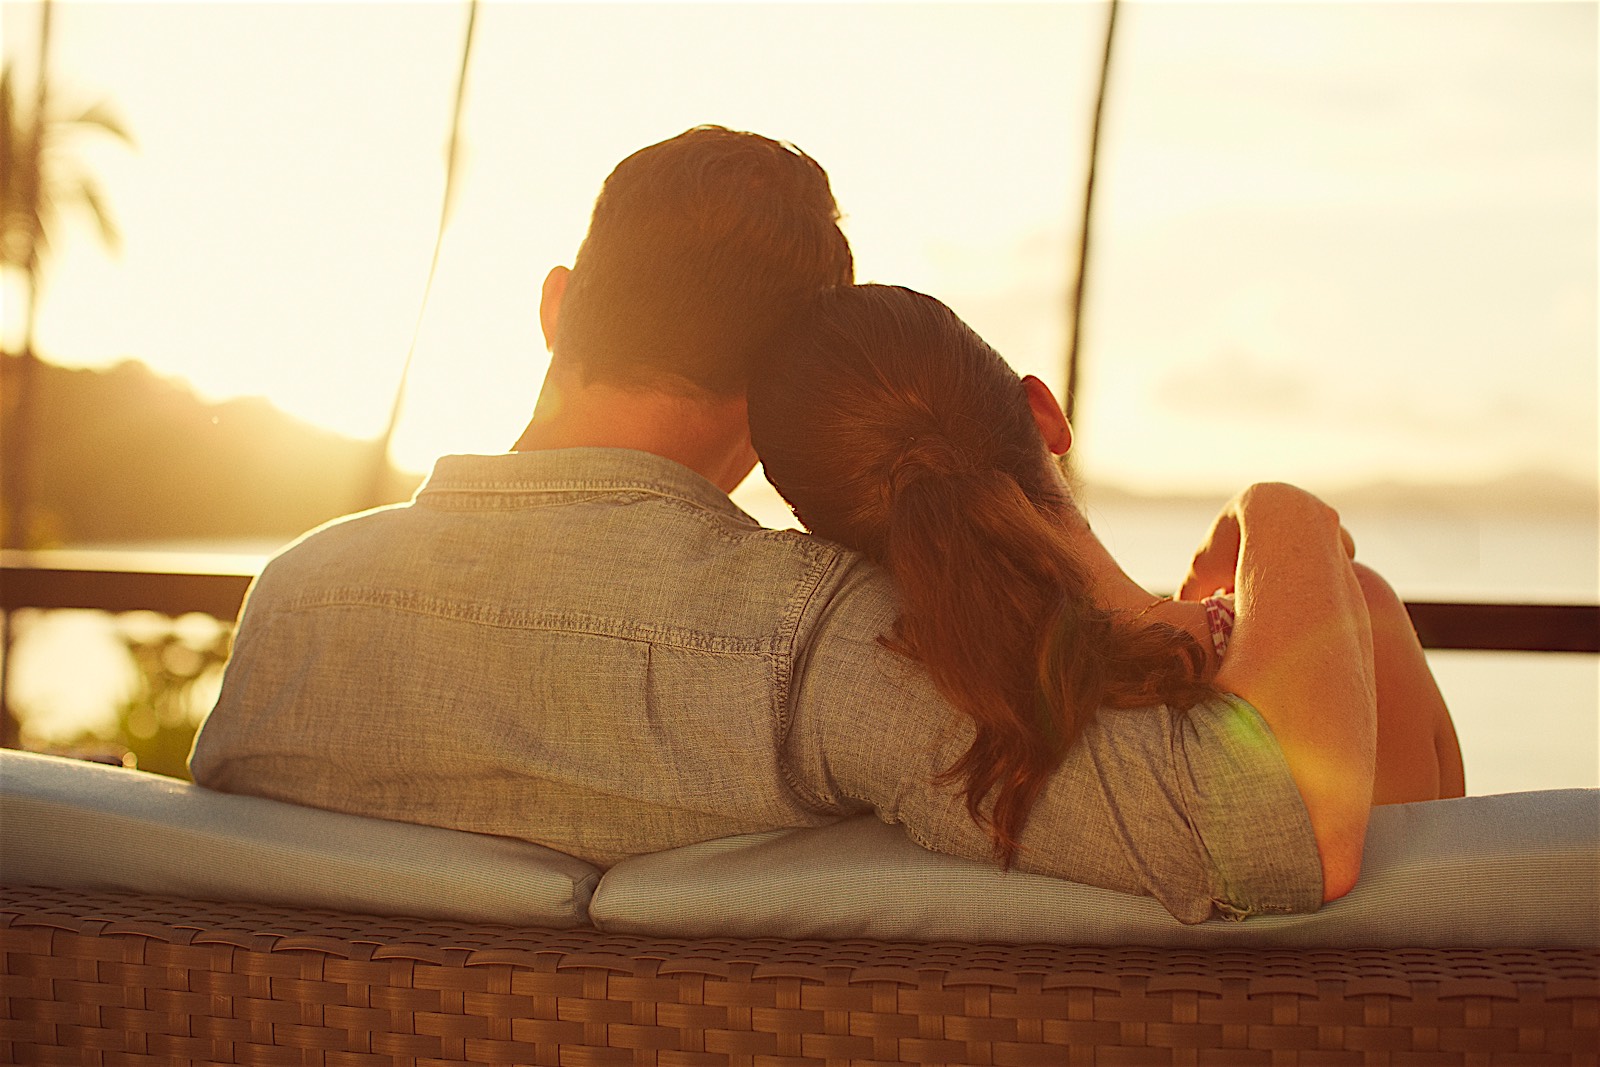 6 романтических вещей, которые вы должны сделать в свой медовый месяц